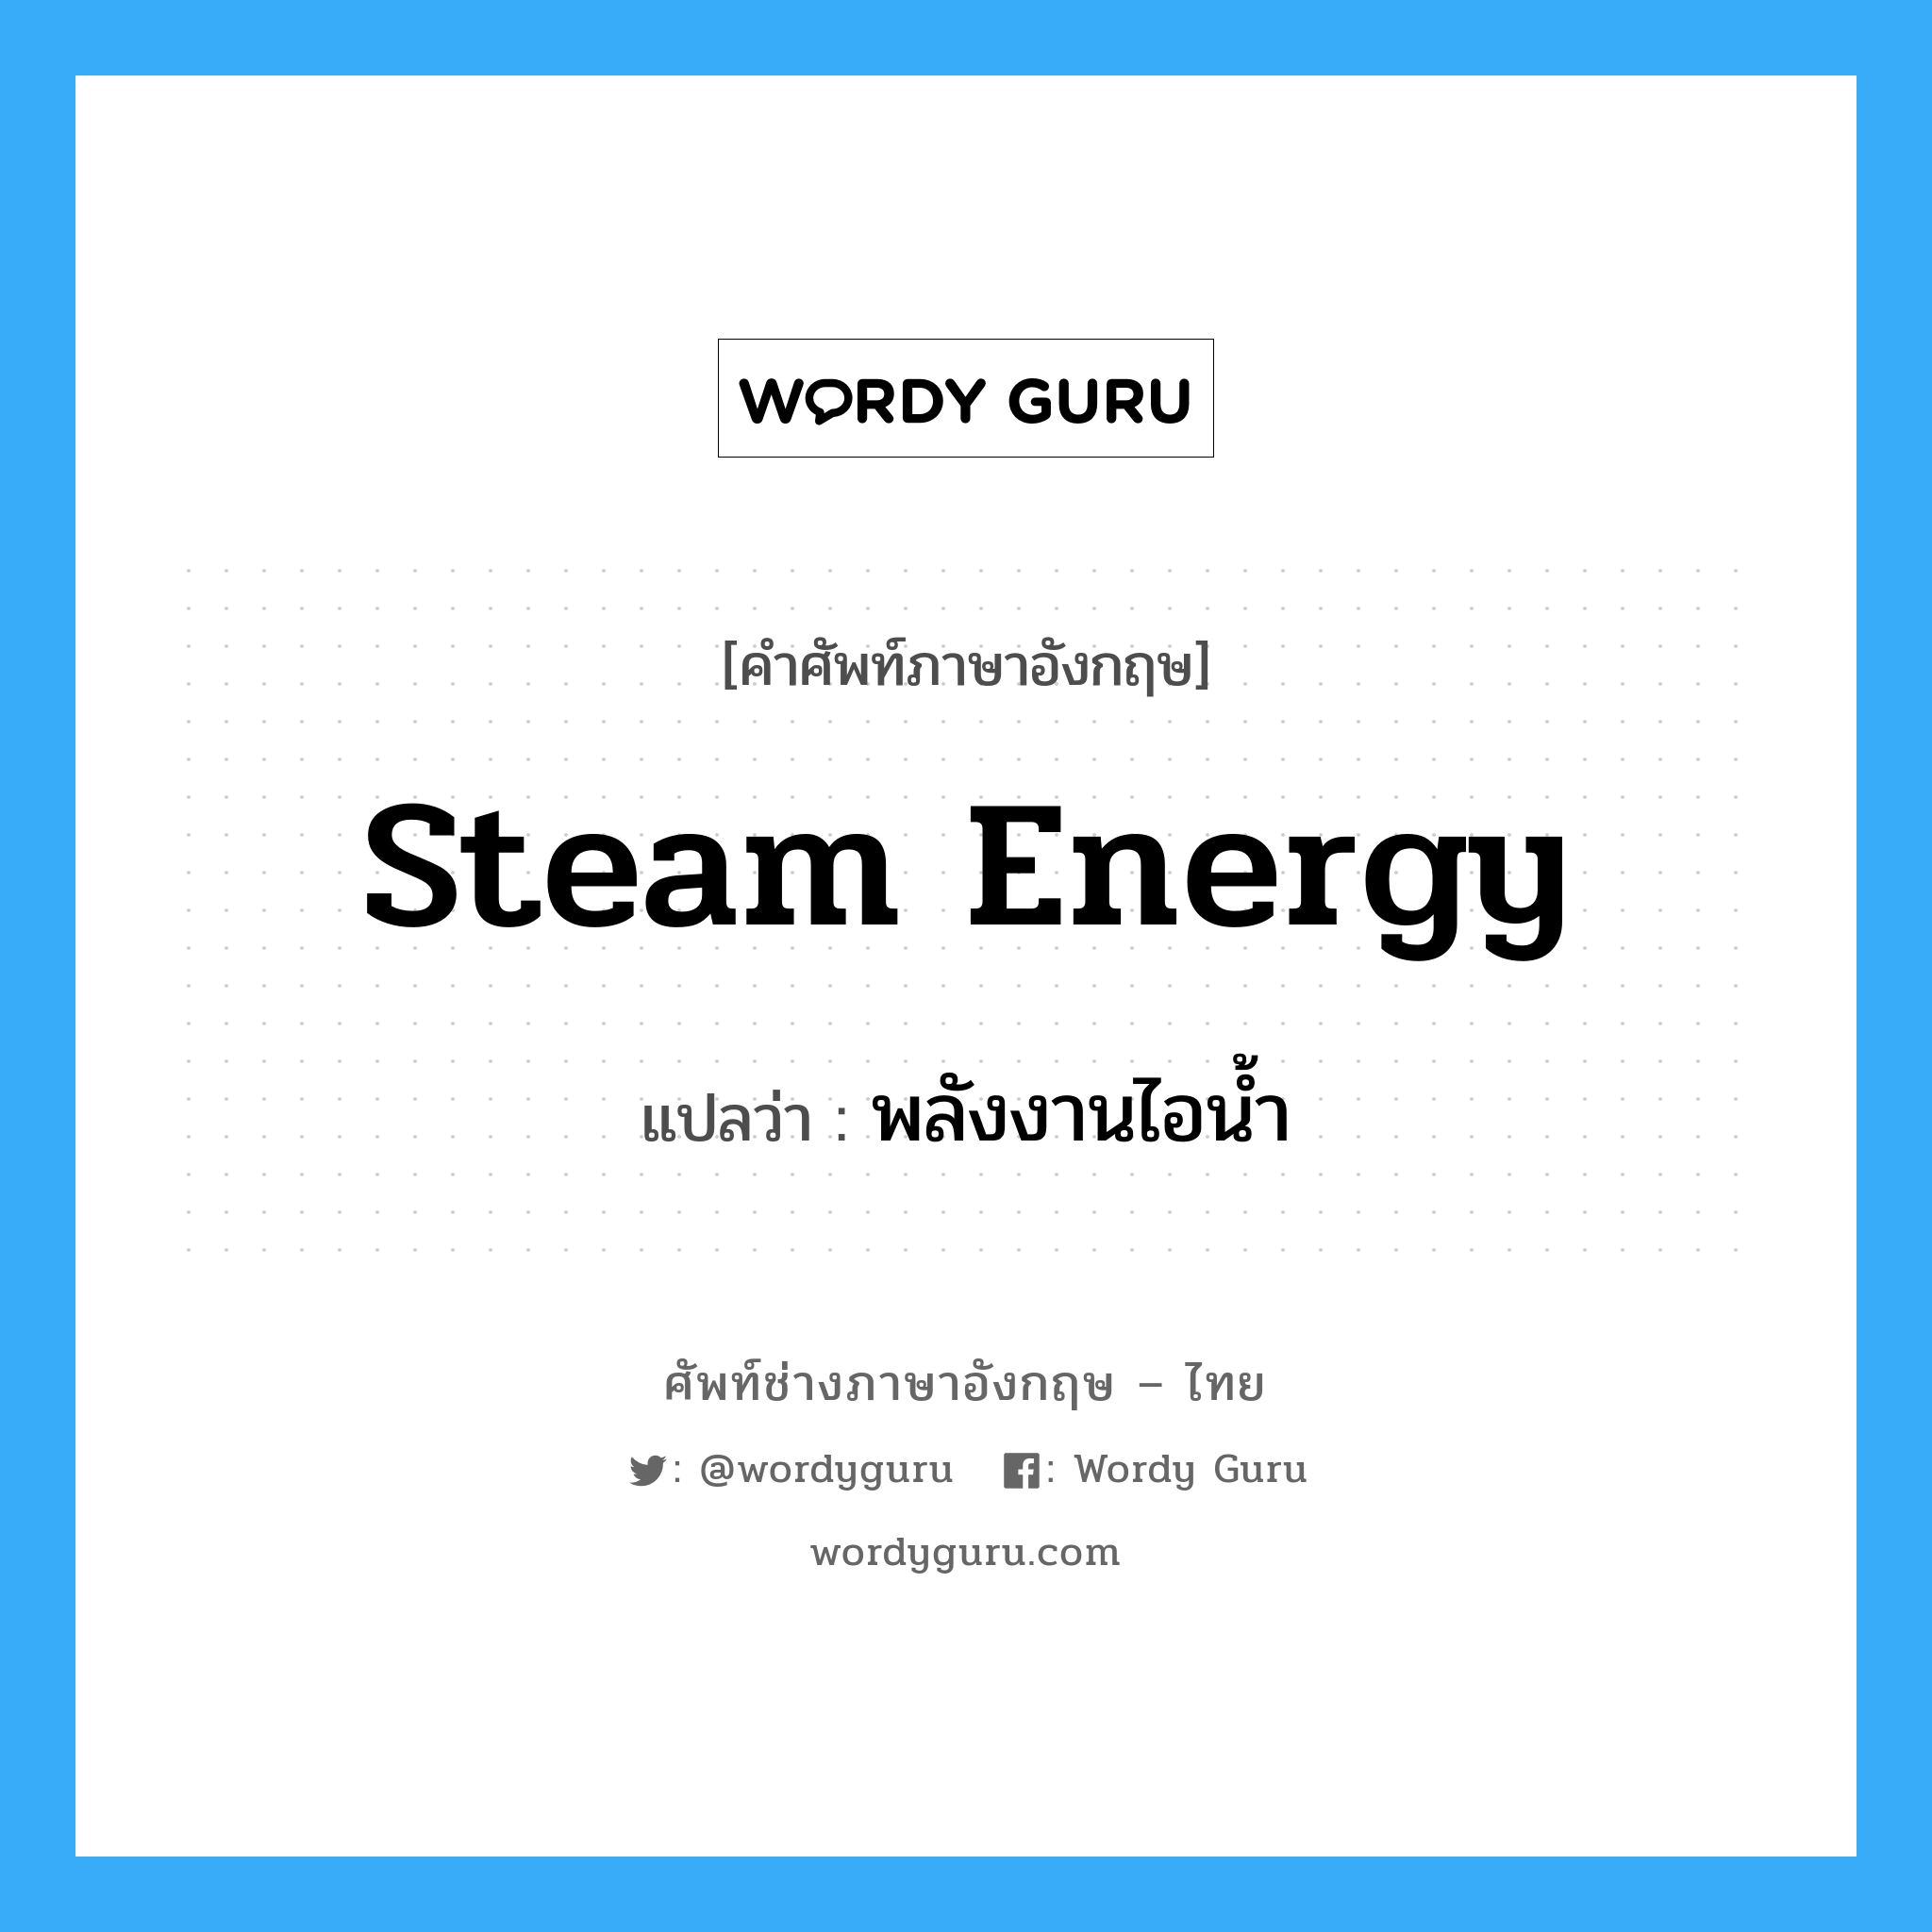 steam energy แปลว่า?, คำศัพท์ช่างภาษาอังกฤษ - ไทย steam energy คำศัพท์ภาษาอังกฤษ steam energy แปลว่า พลังงานไอน้ำ